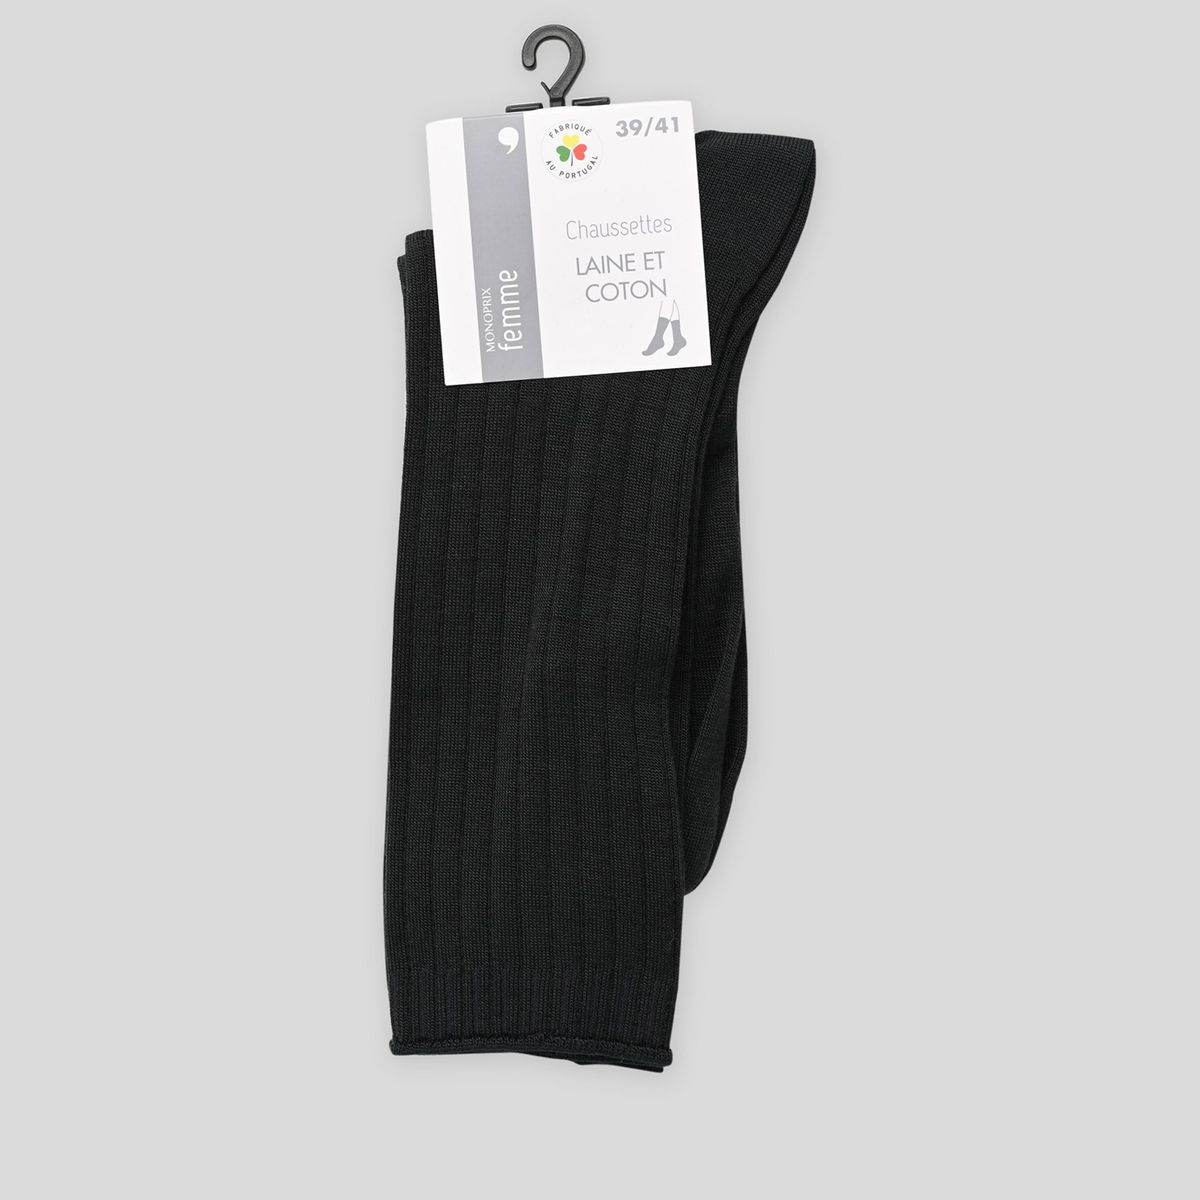 Chaussettes pour femme noir en coton; Made in Italy. – Mes